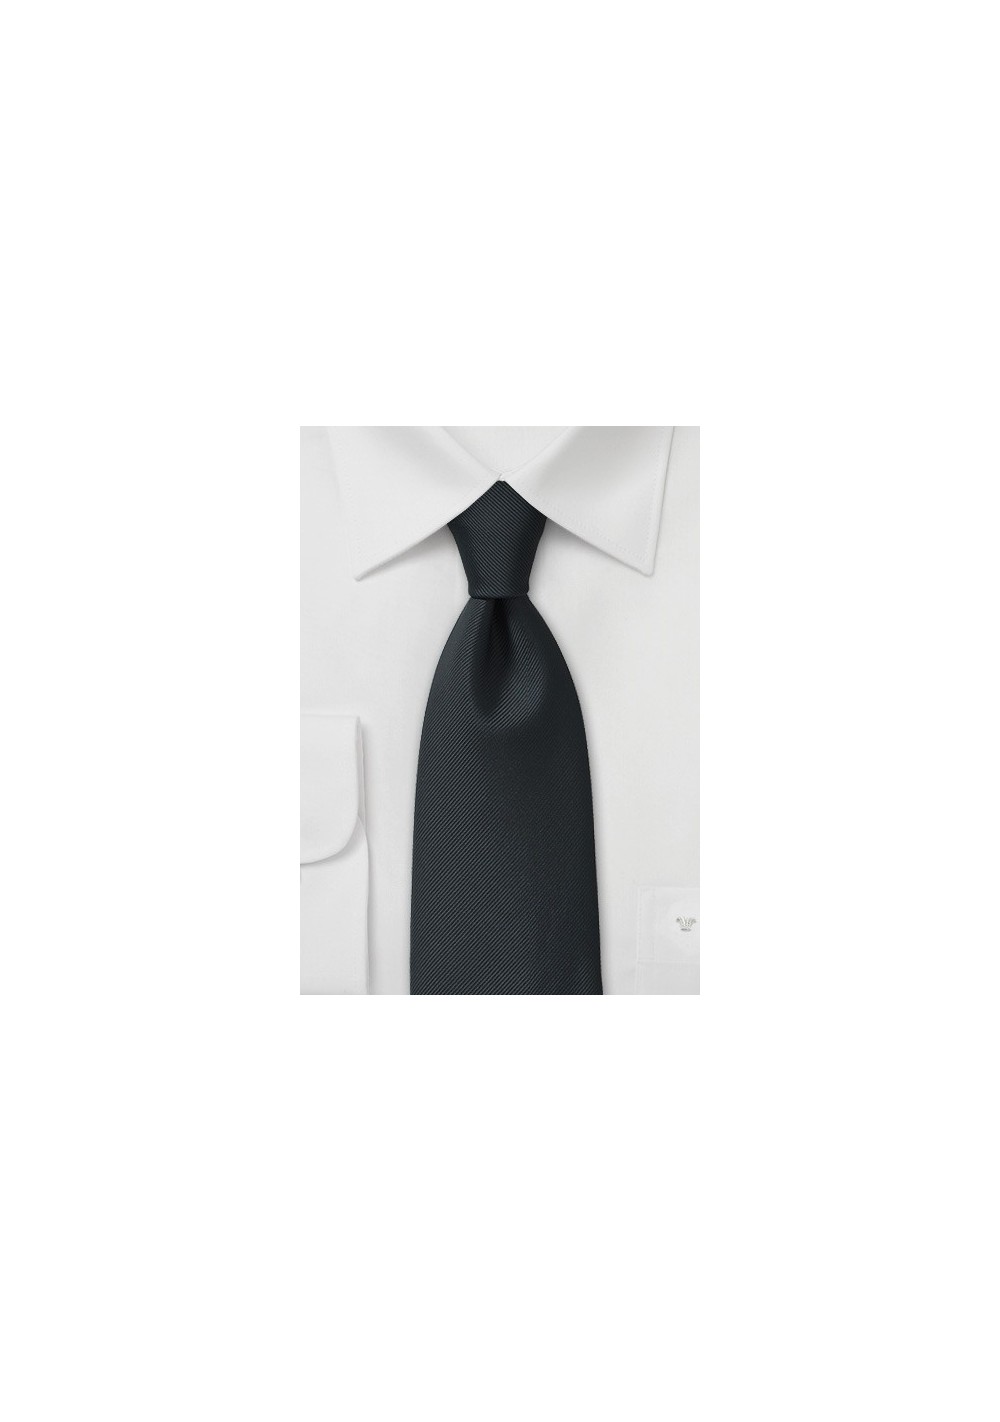 Handcrafted Microfiber Necktie in Onyx